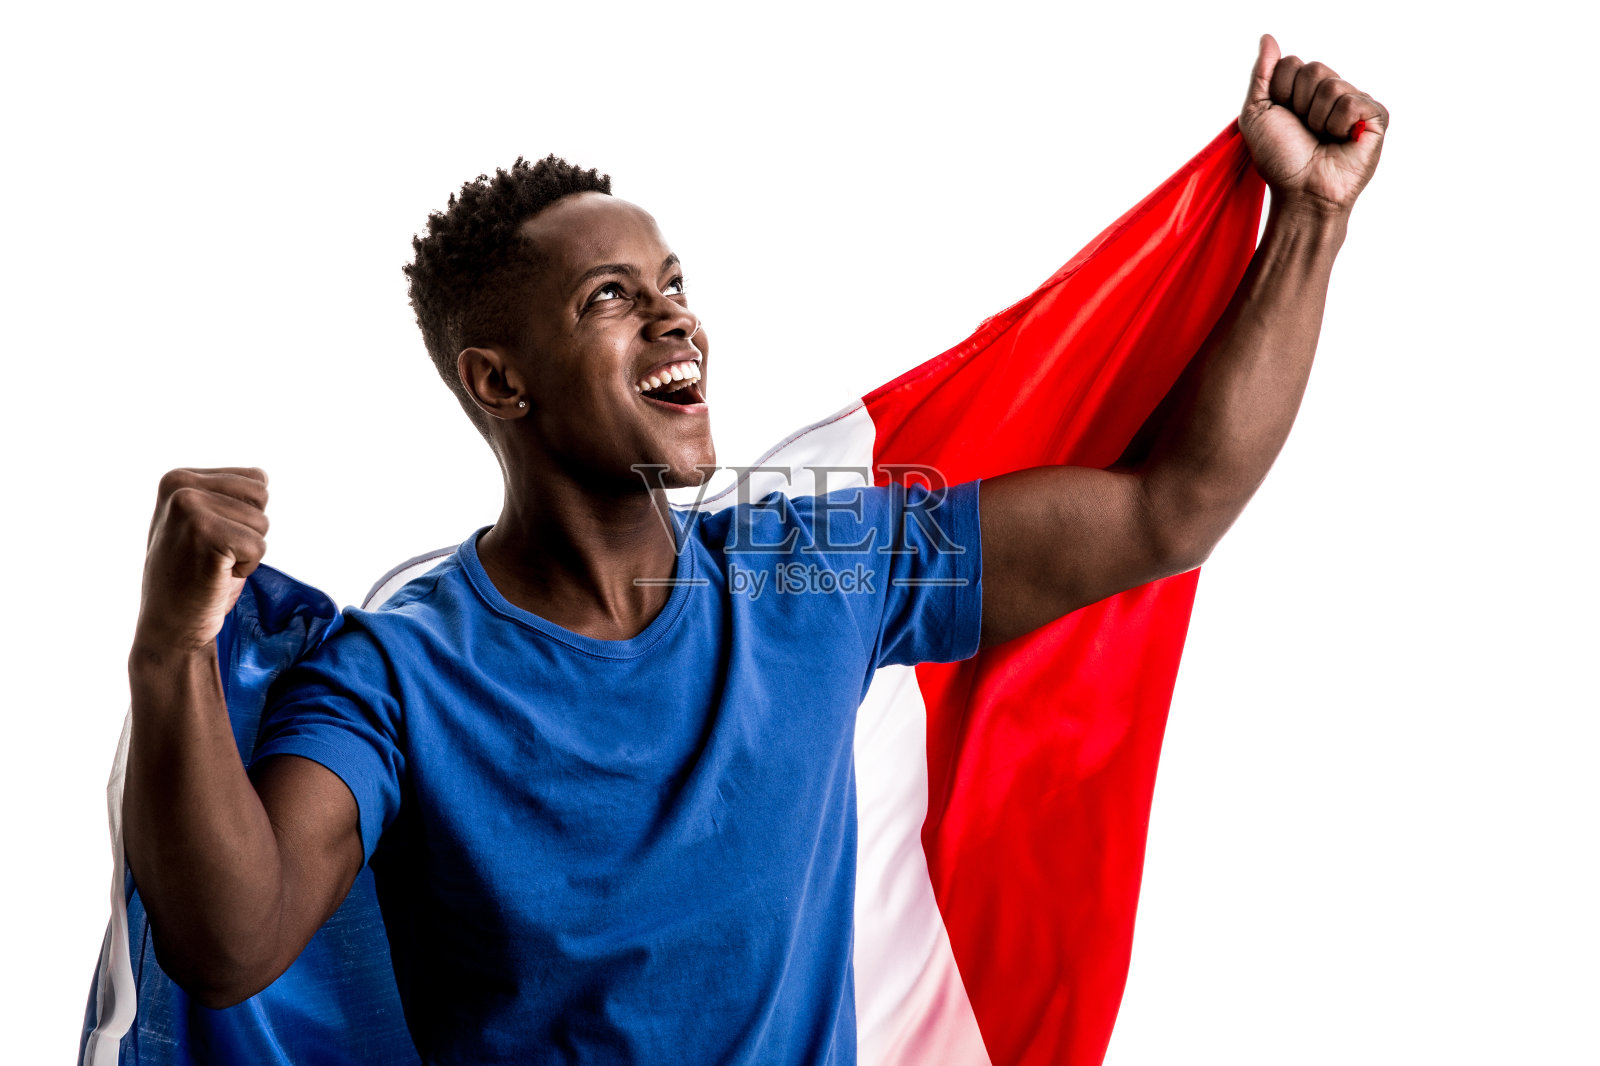 举着法国国旗的球迷/运动员照片摄影图片